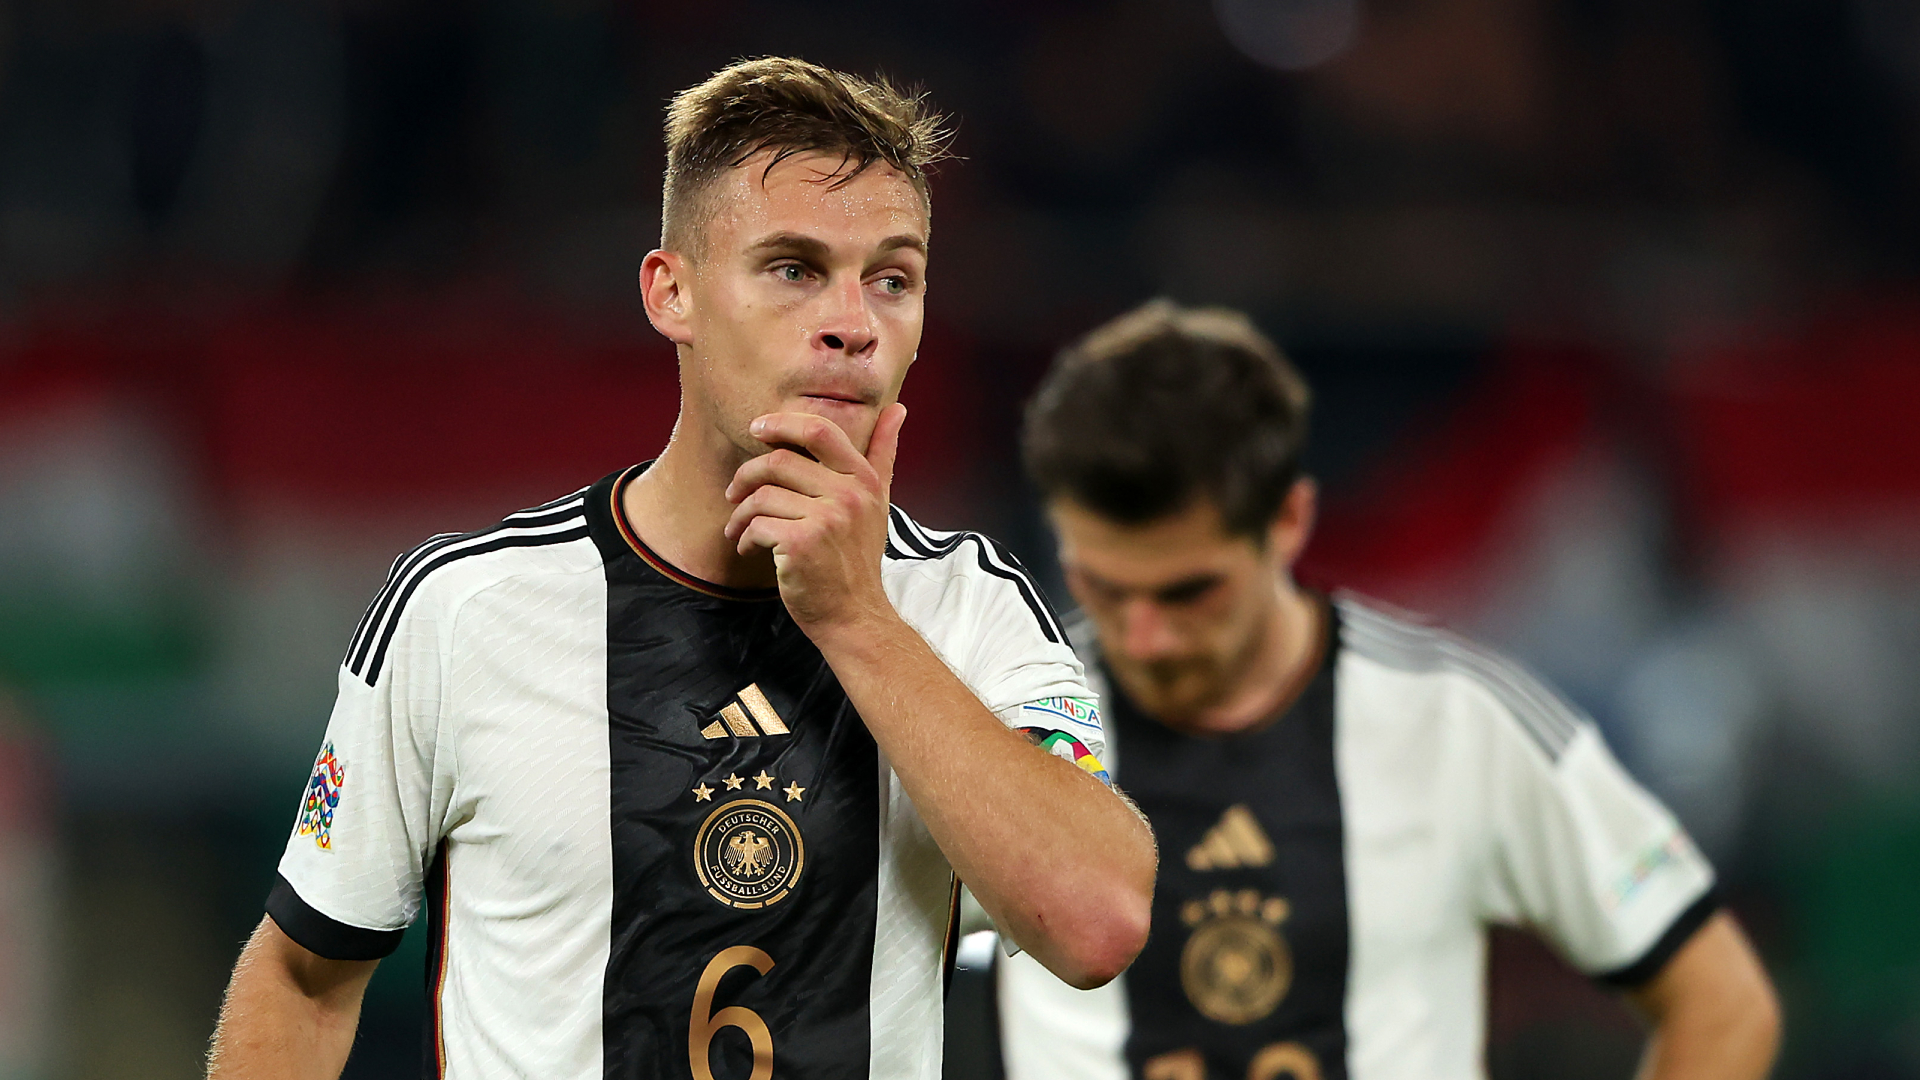 Alemania, sin chances de acceder al Final Four: perdió contra Hungría